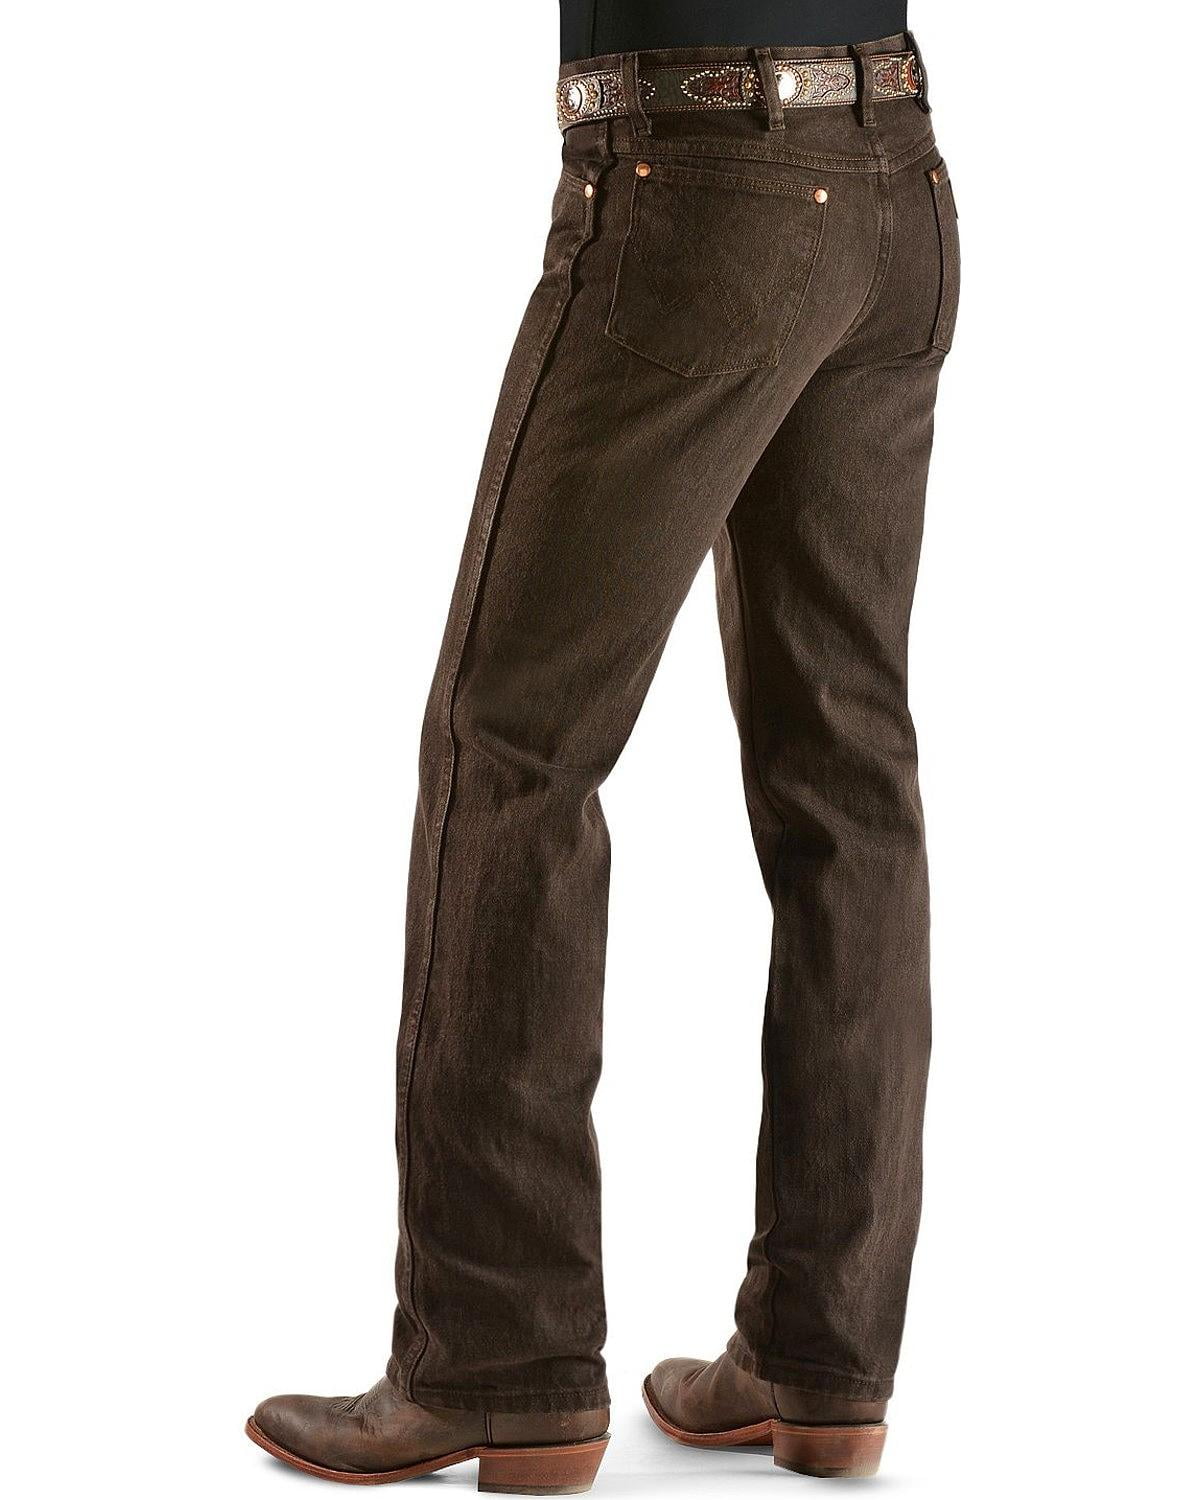 Wrangler Men's Jeans 936 Slim Fit Prewashed Colors - Mesquite_X ...